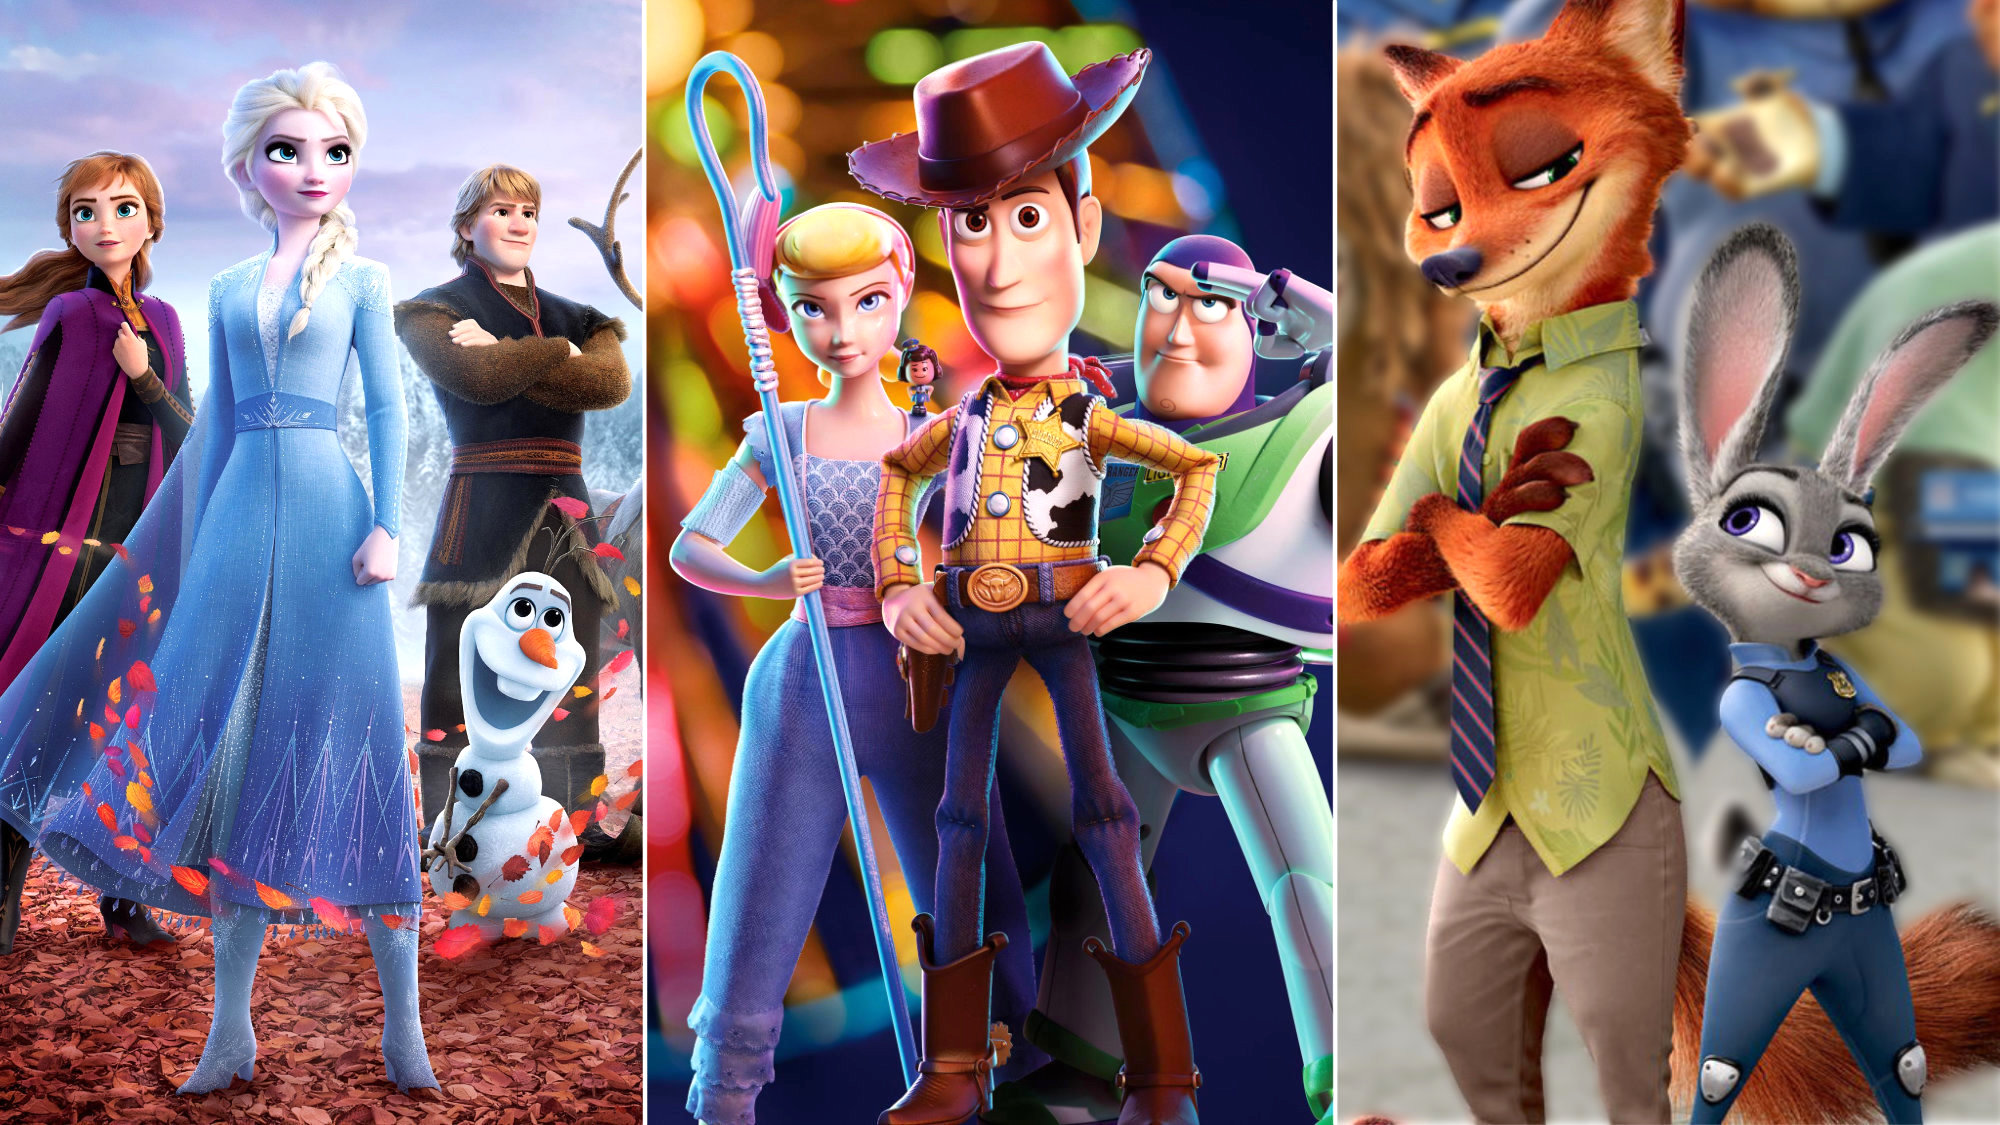 'Frozen' tendrá una tercera película, y otras franquicias también. Bob Iger, CEO de Disney, anuncia novedades